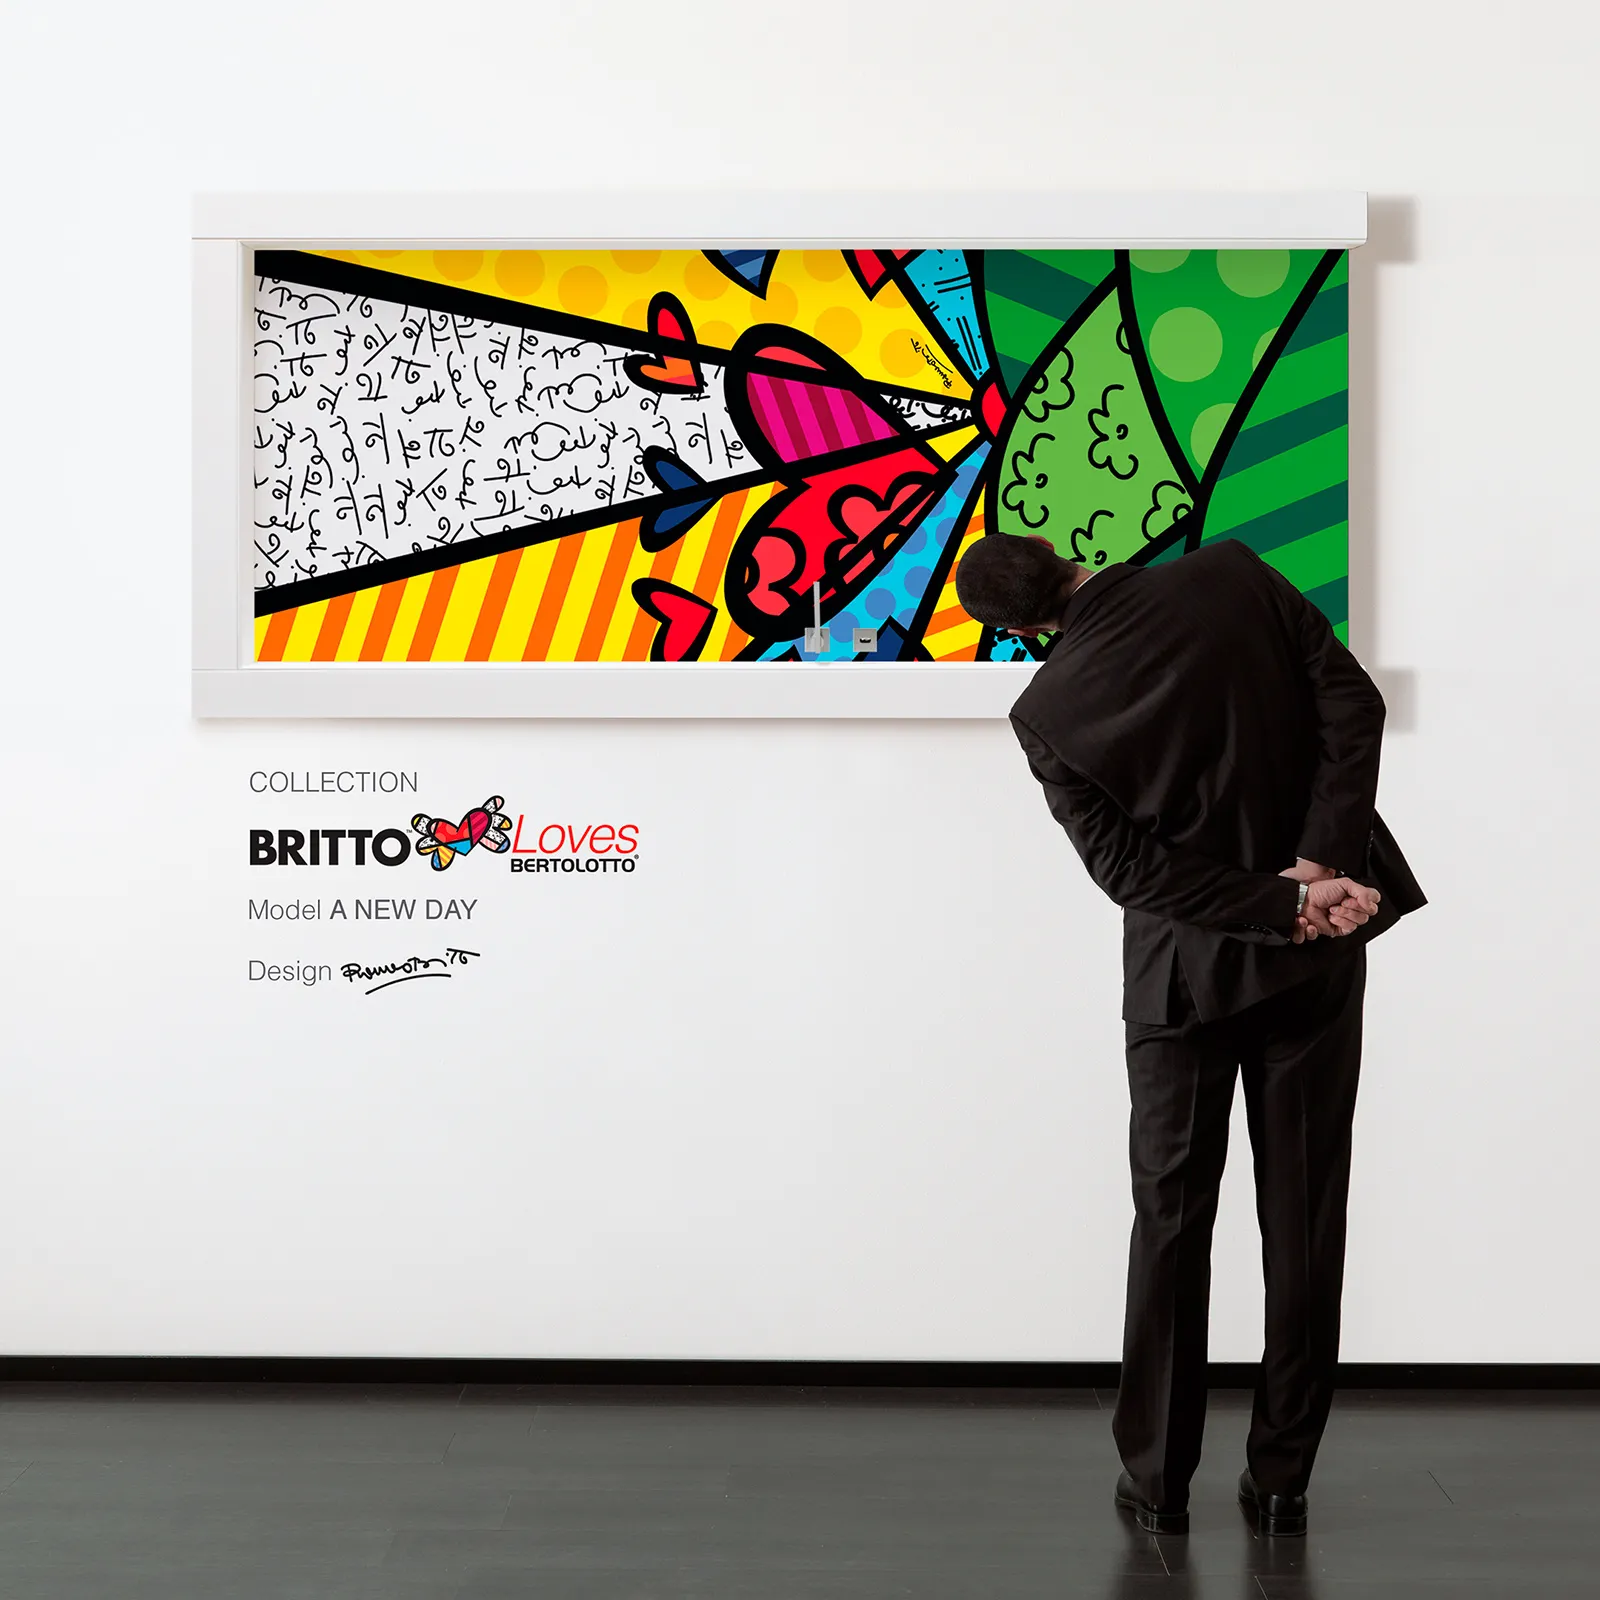 A man curiously looking at a Romero Britto Art work in Spacio Art Gallery. Spacio Blog on Romero Britto.